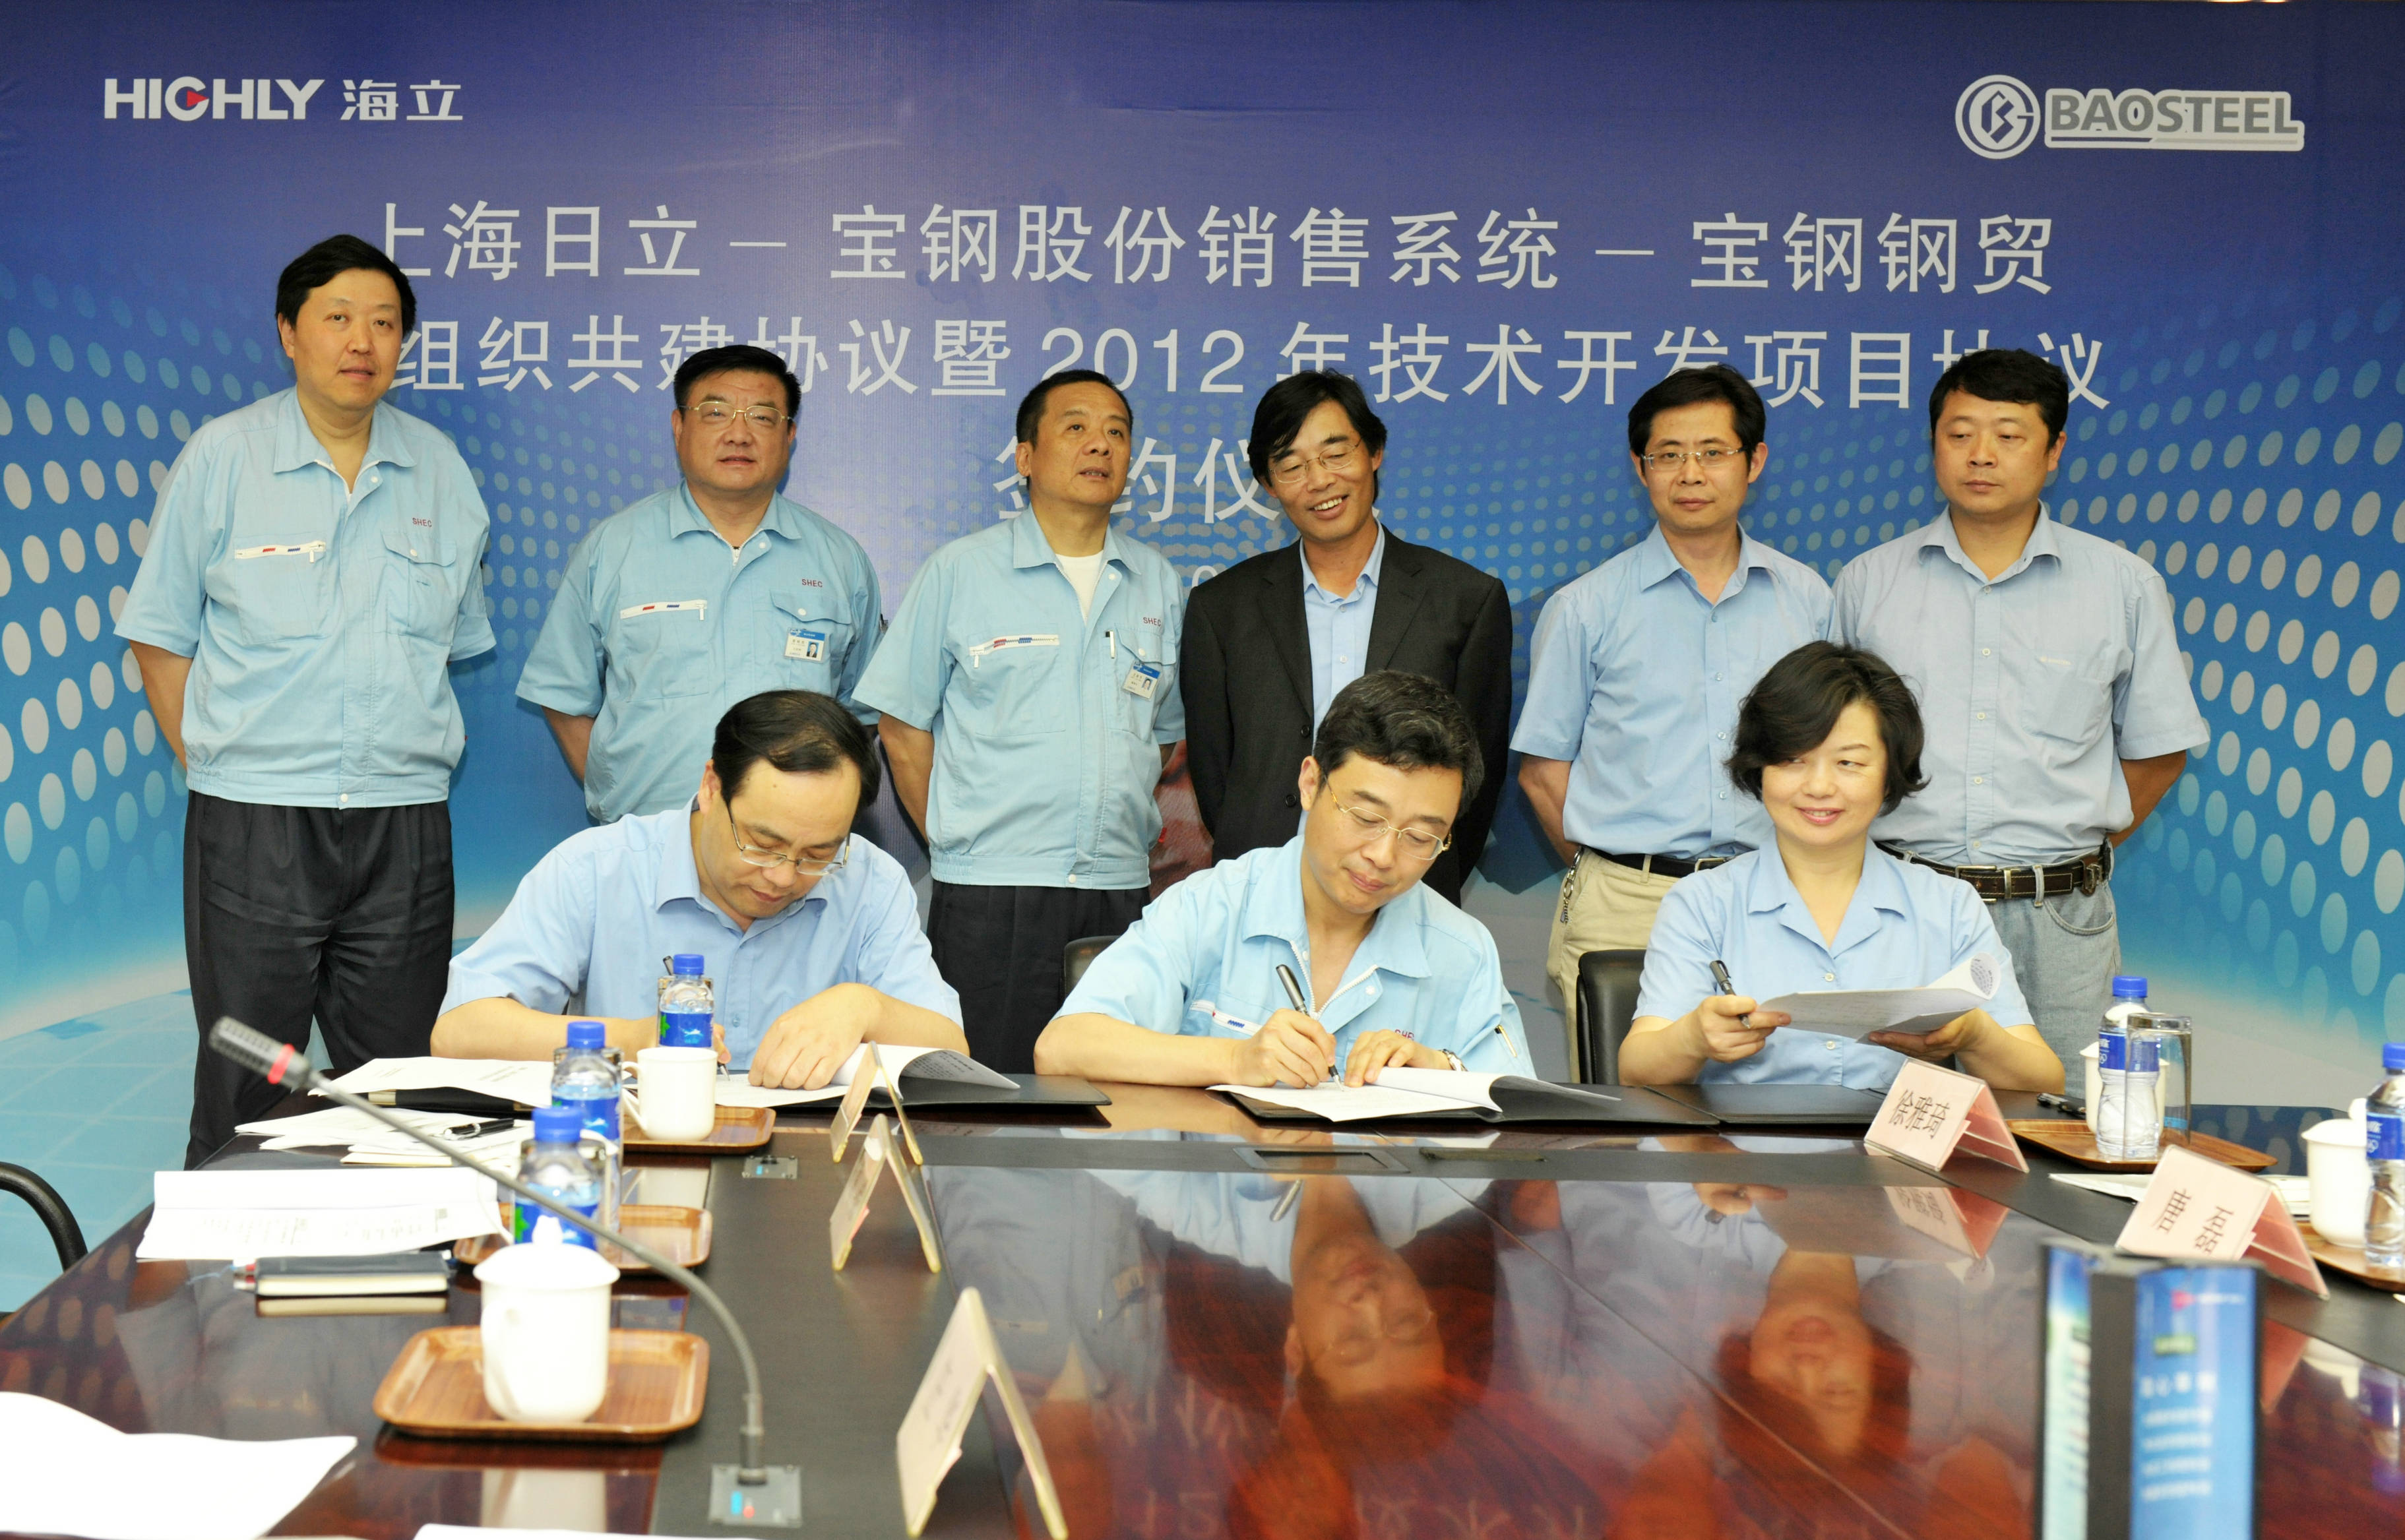 上海日立举行与宝钢党组织共建协议暨2012年技术开发项目协议签订仪式